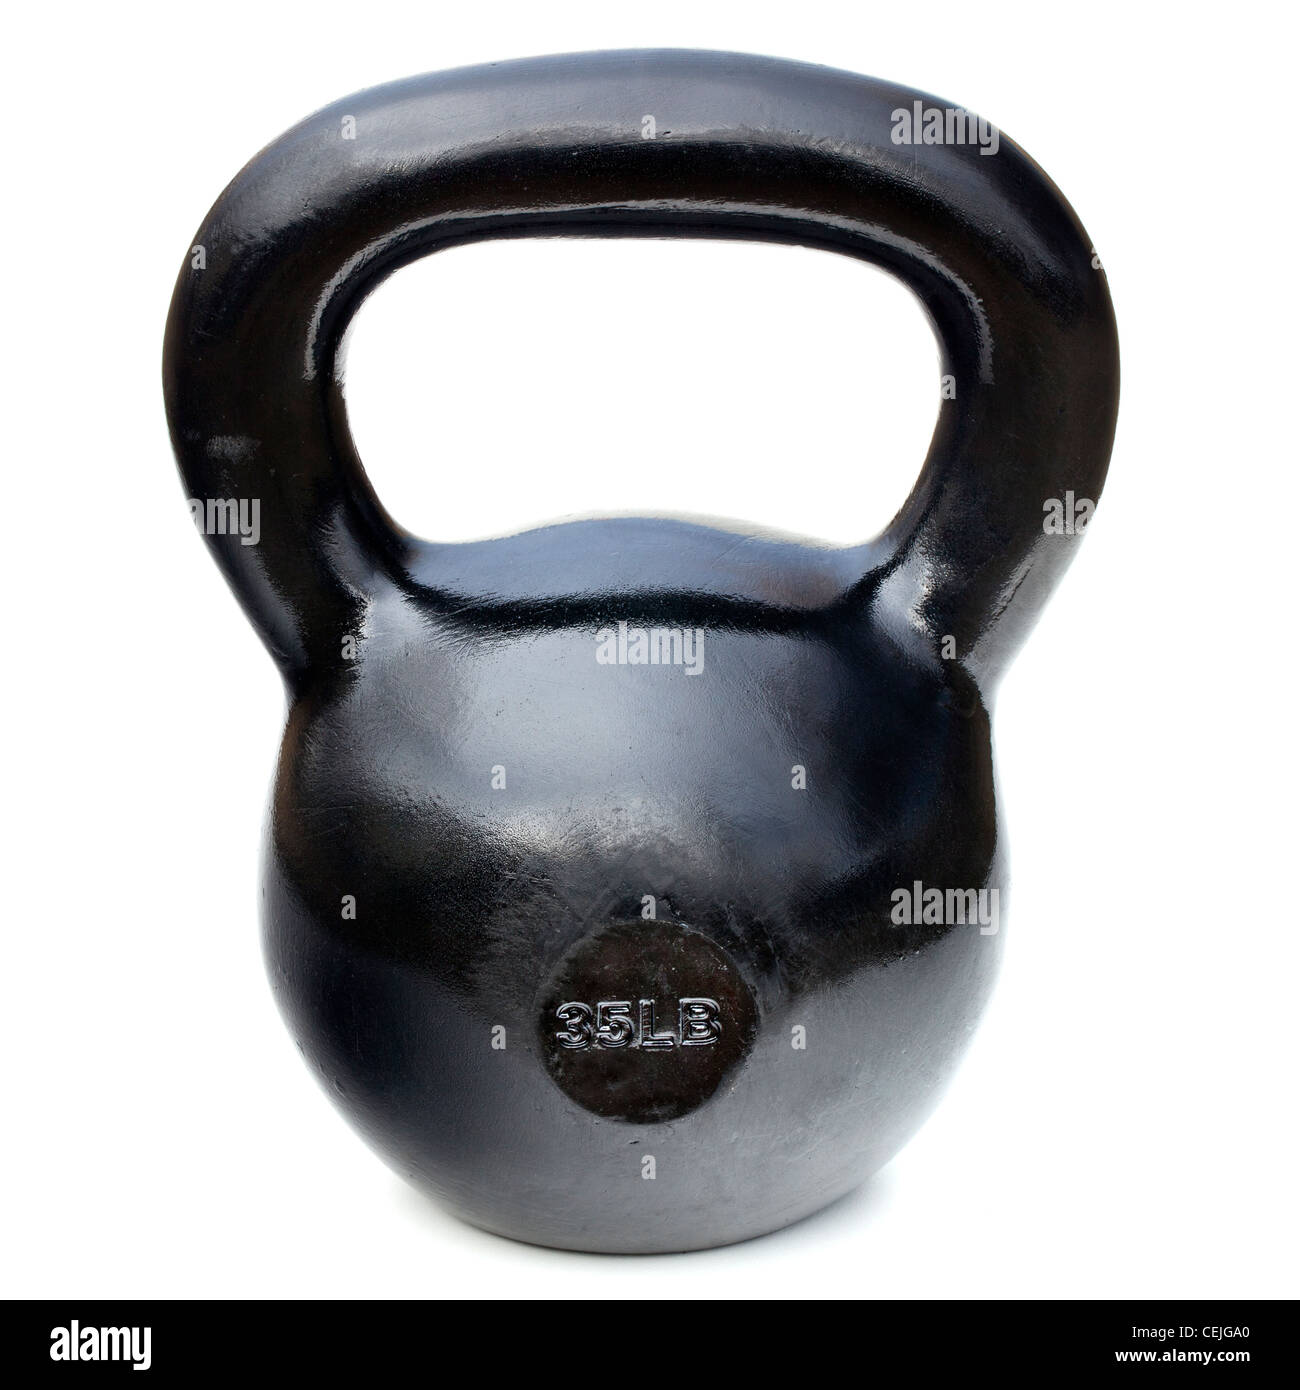 Negro brillante 35 lb plancha kettlebell para levantamiento de pesas y entrenamiento físico aislado en blanco Foto de stock